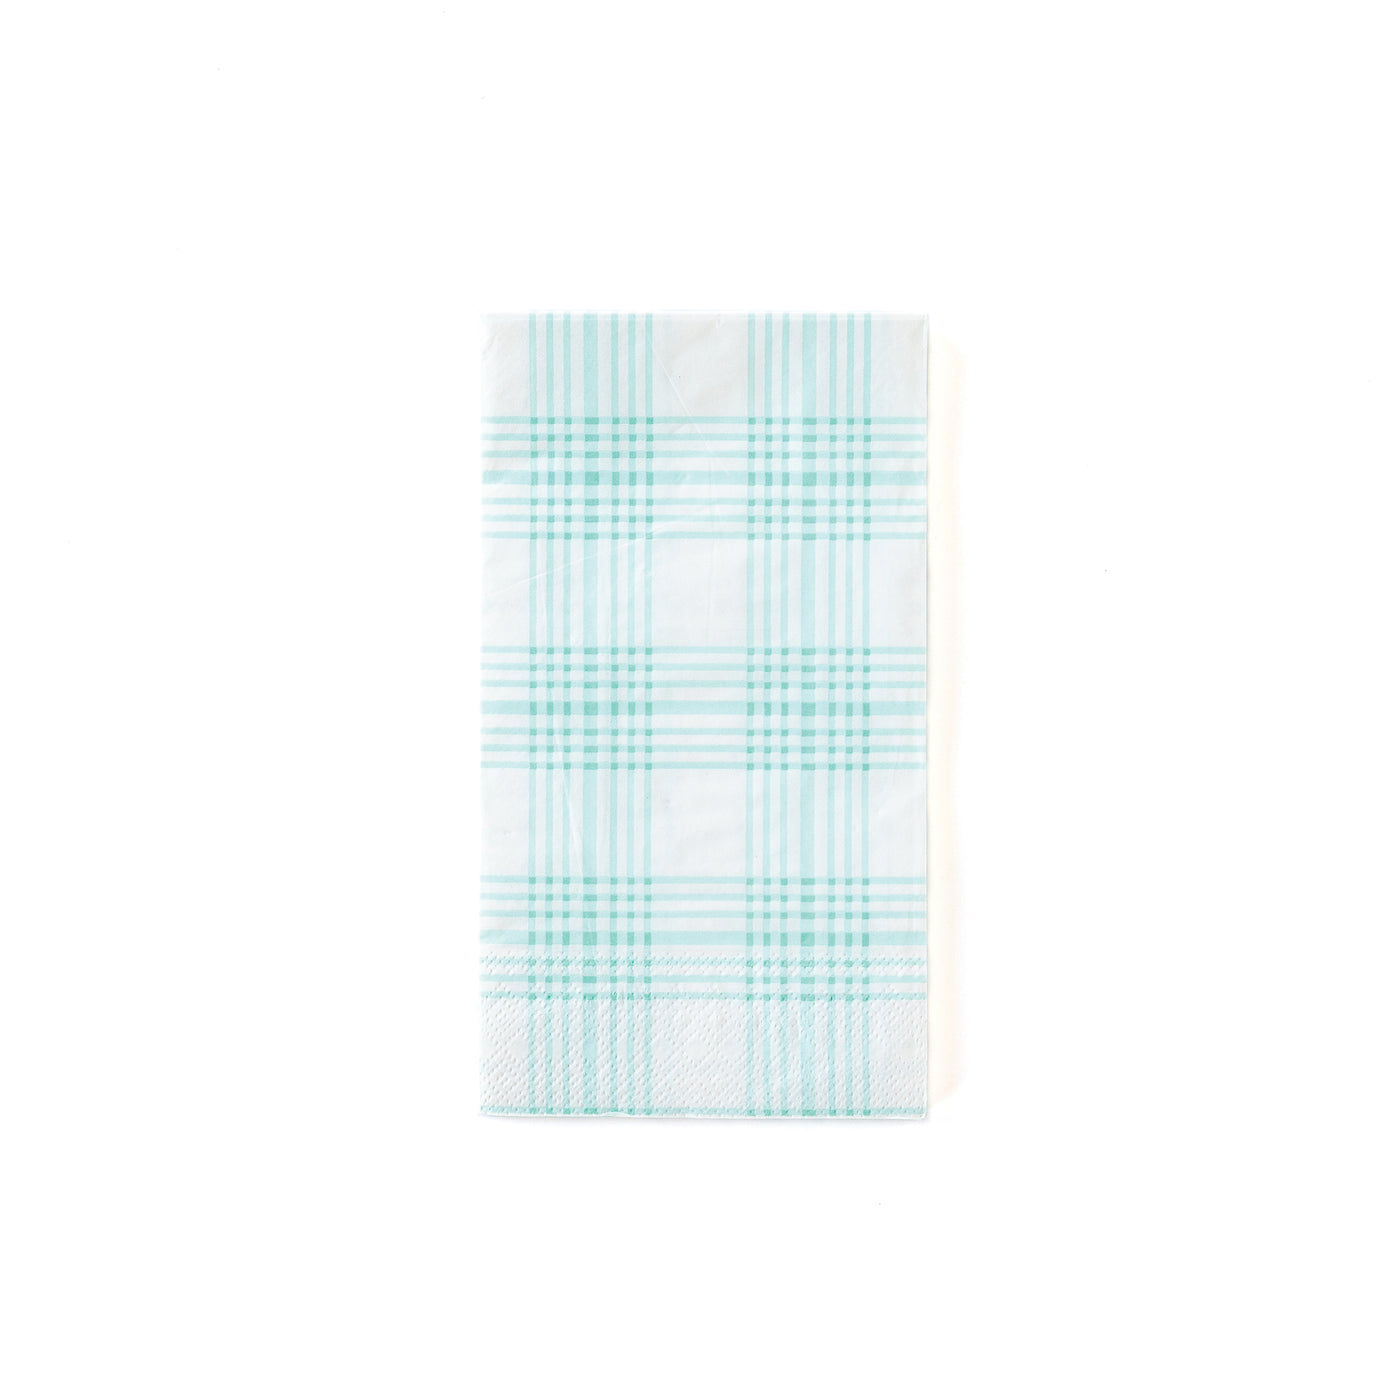 PGB846 - Blue Plaid Guest Paper Napkin